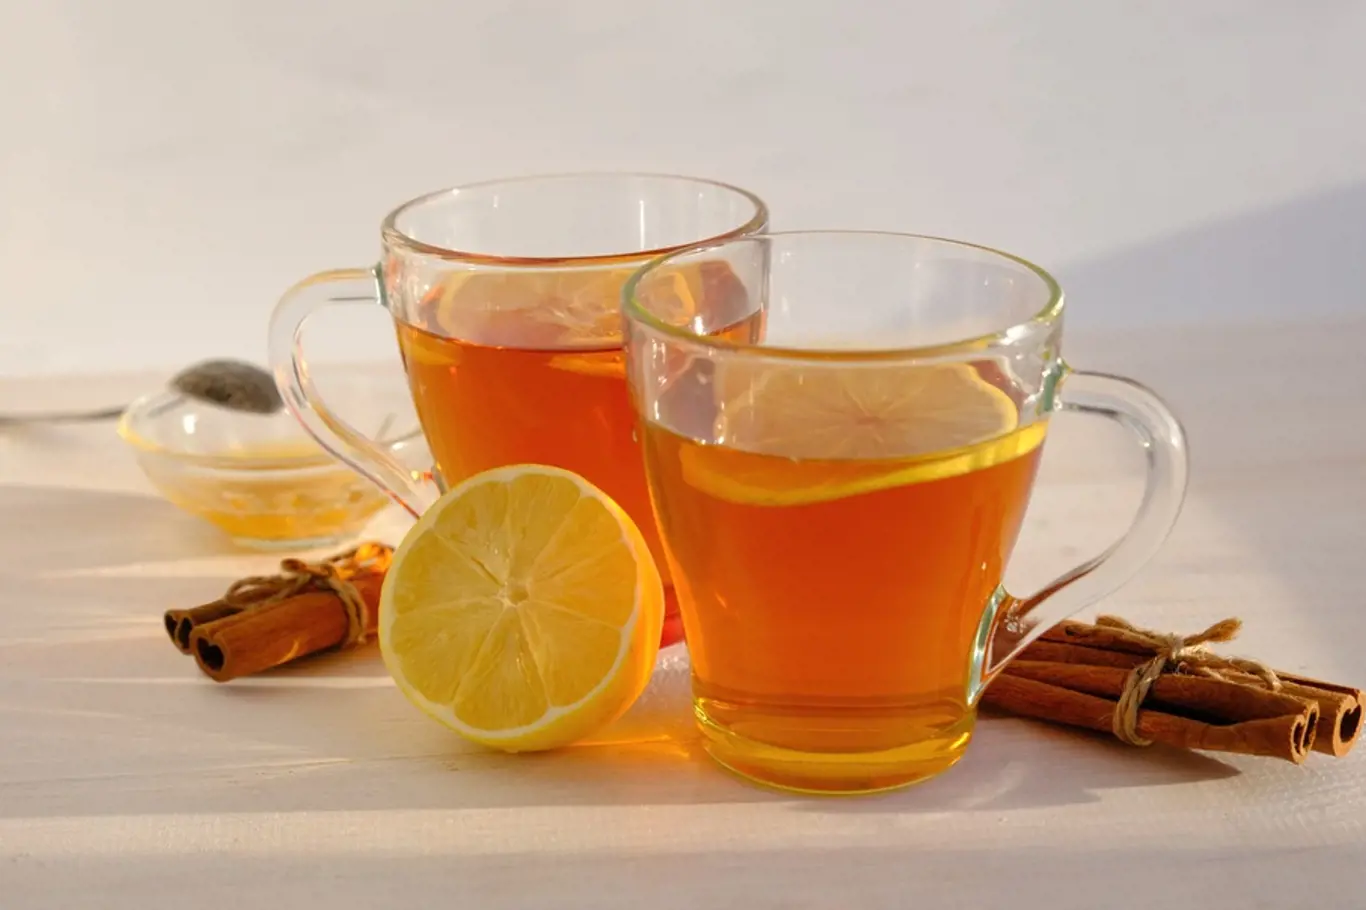 Hledáte naprosto přírodní způsob, jak shodit několik kilogramů? Pijte čaj z voňavé skořice a dejte si do něj i sladký med.